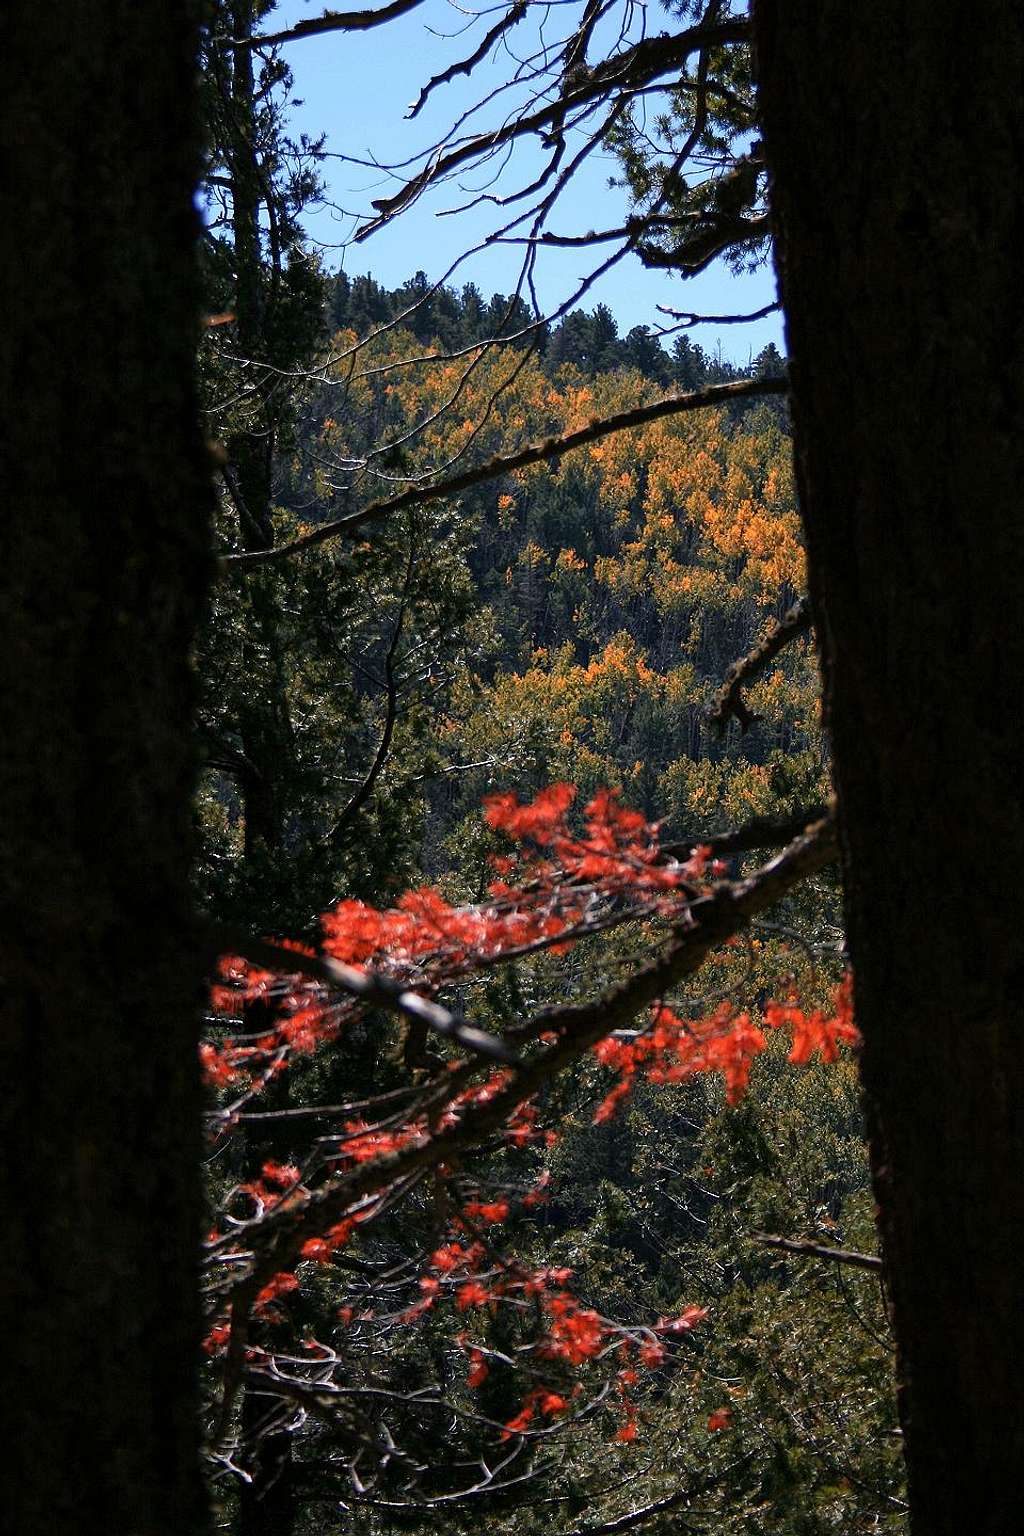 Sawyers Peak through the trees